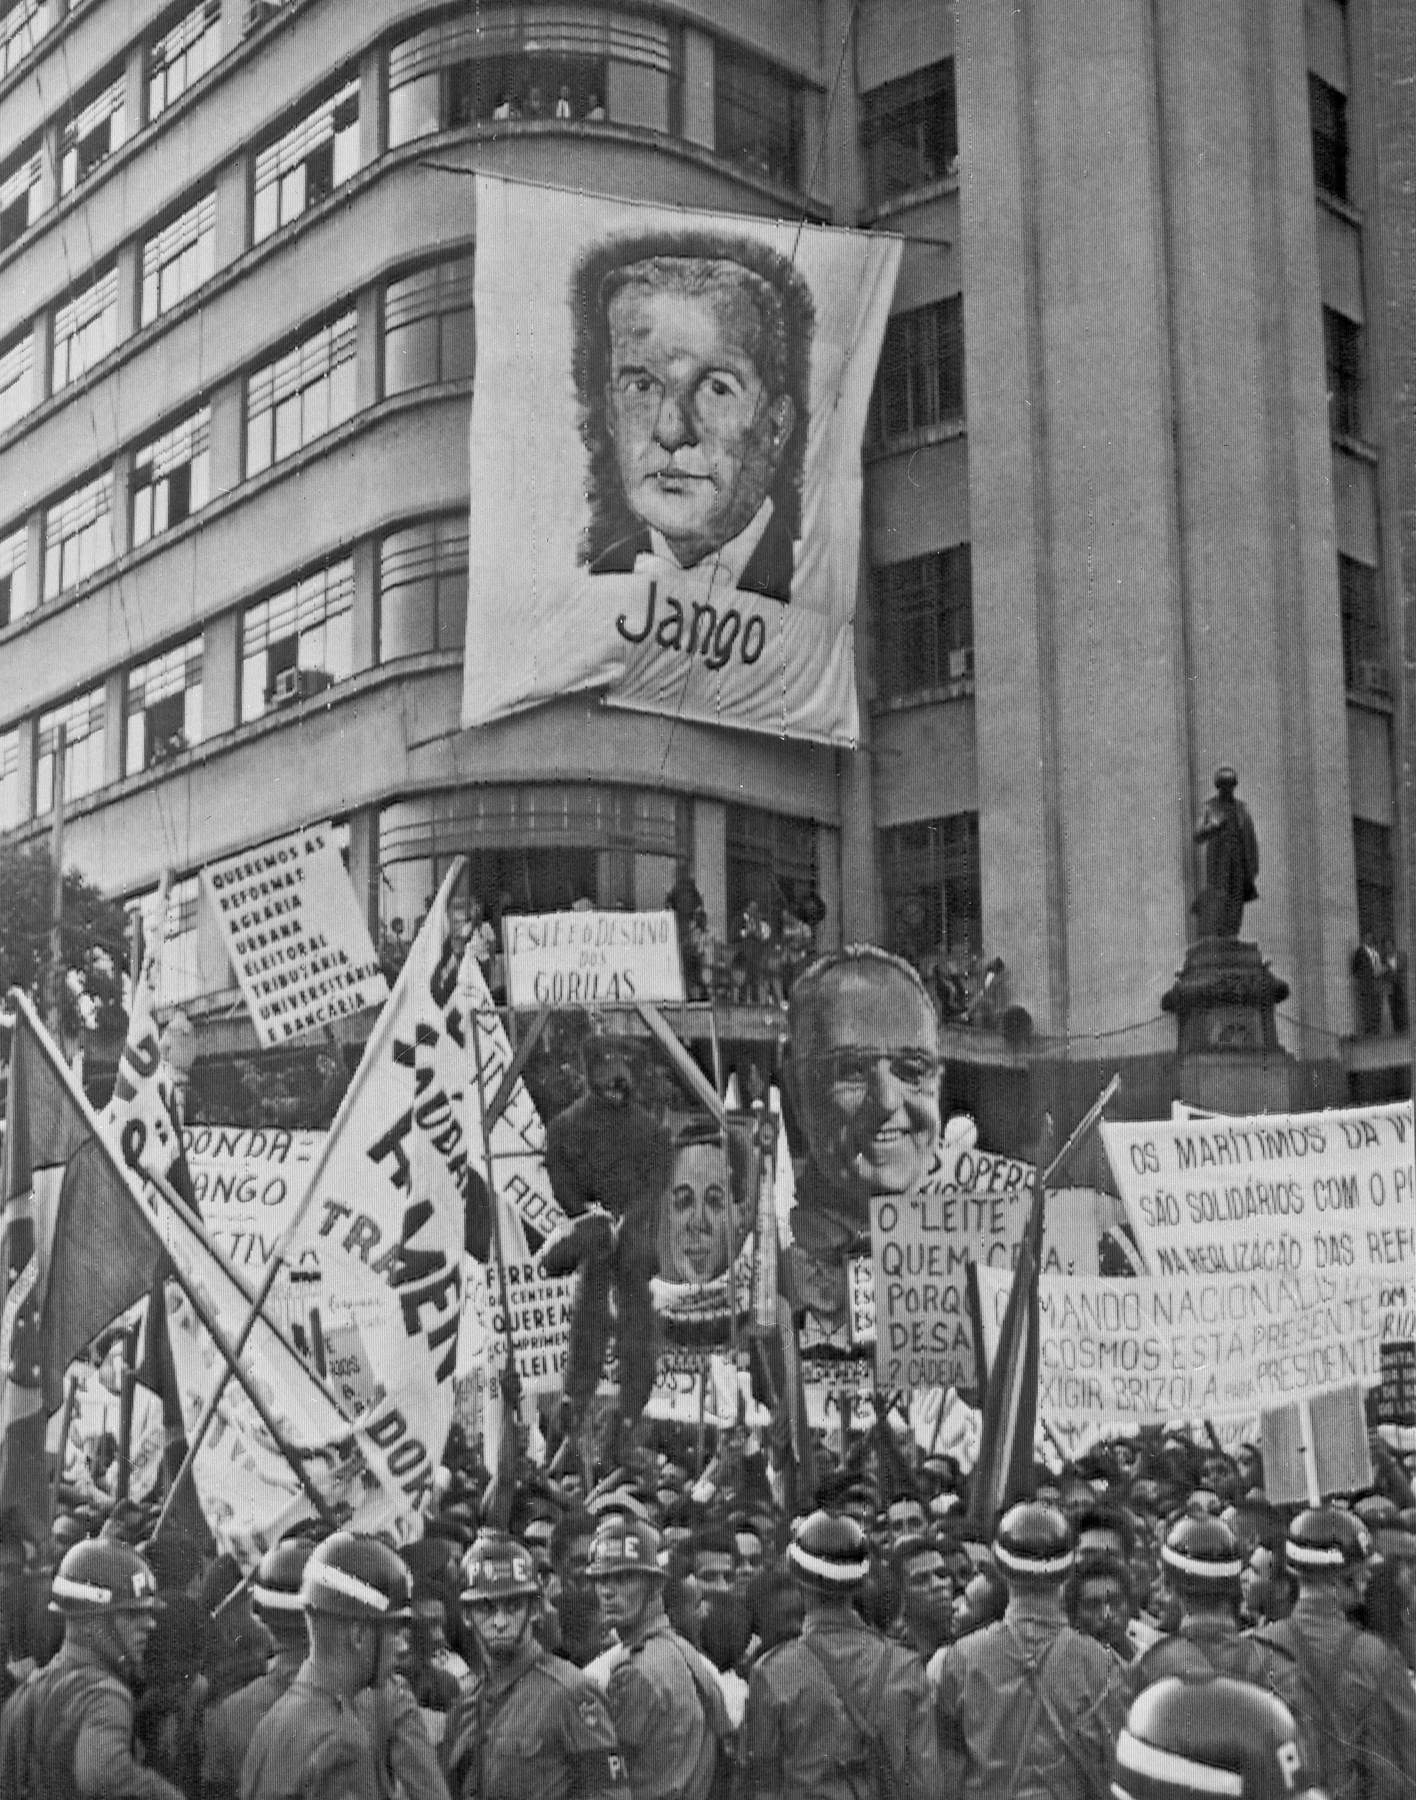 Fotografia em preto e branco. Uma multidão de pessoas aglomeradas em frente a um edifício, portando faixas e cartazes. Destaque para uma faixa, pendurada na fachada do edifício, retratando o rosto de um homem, com o nome: 'Jango'.